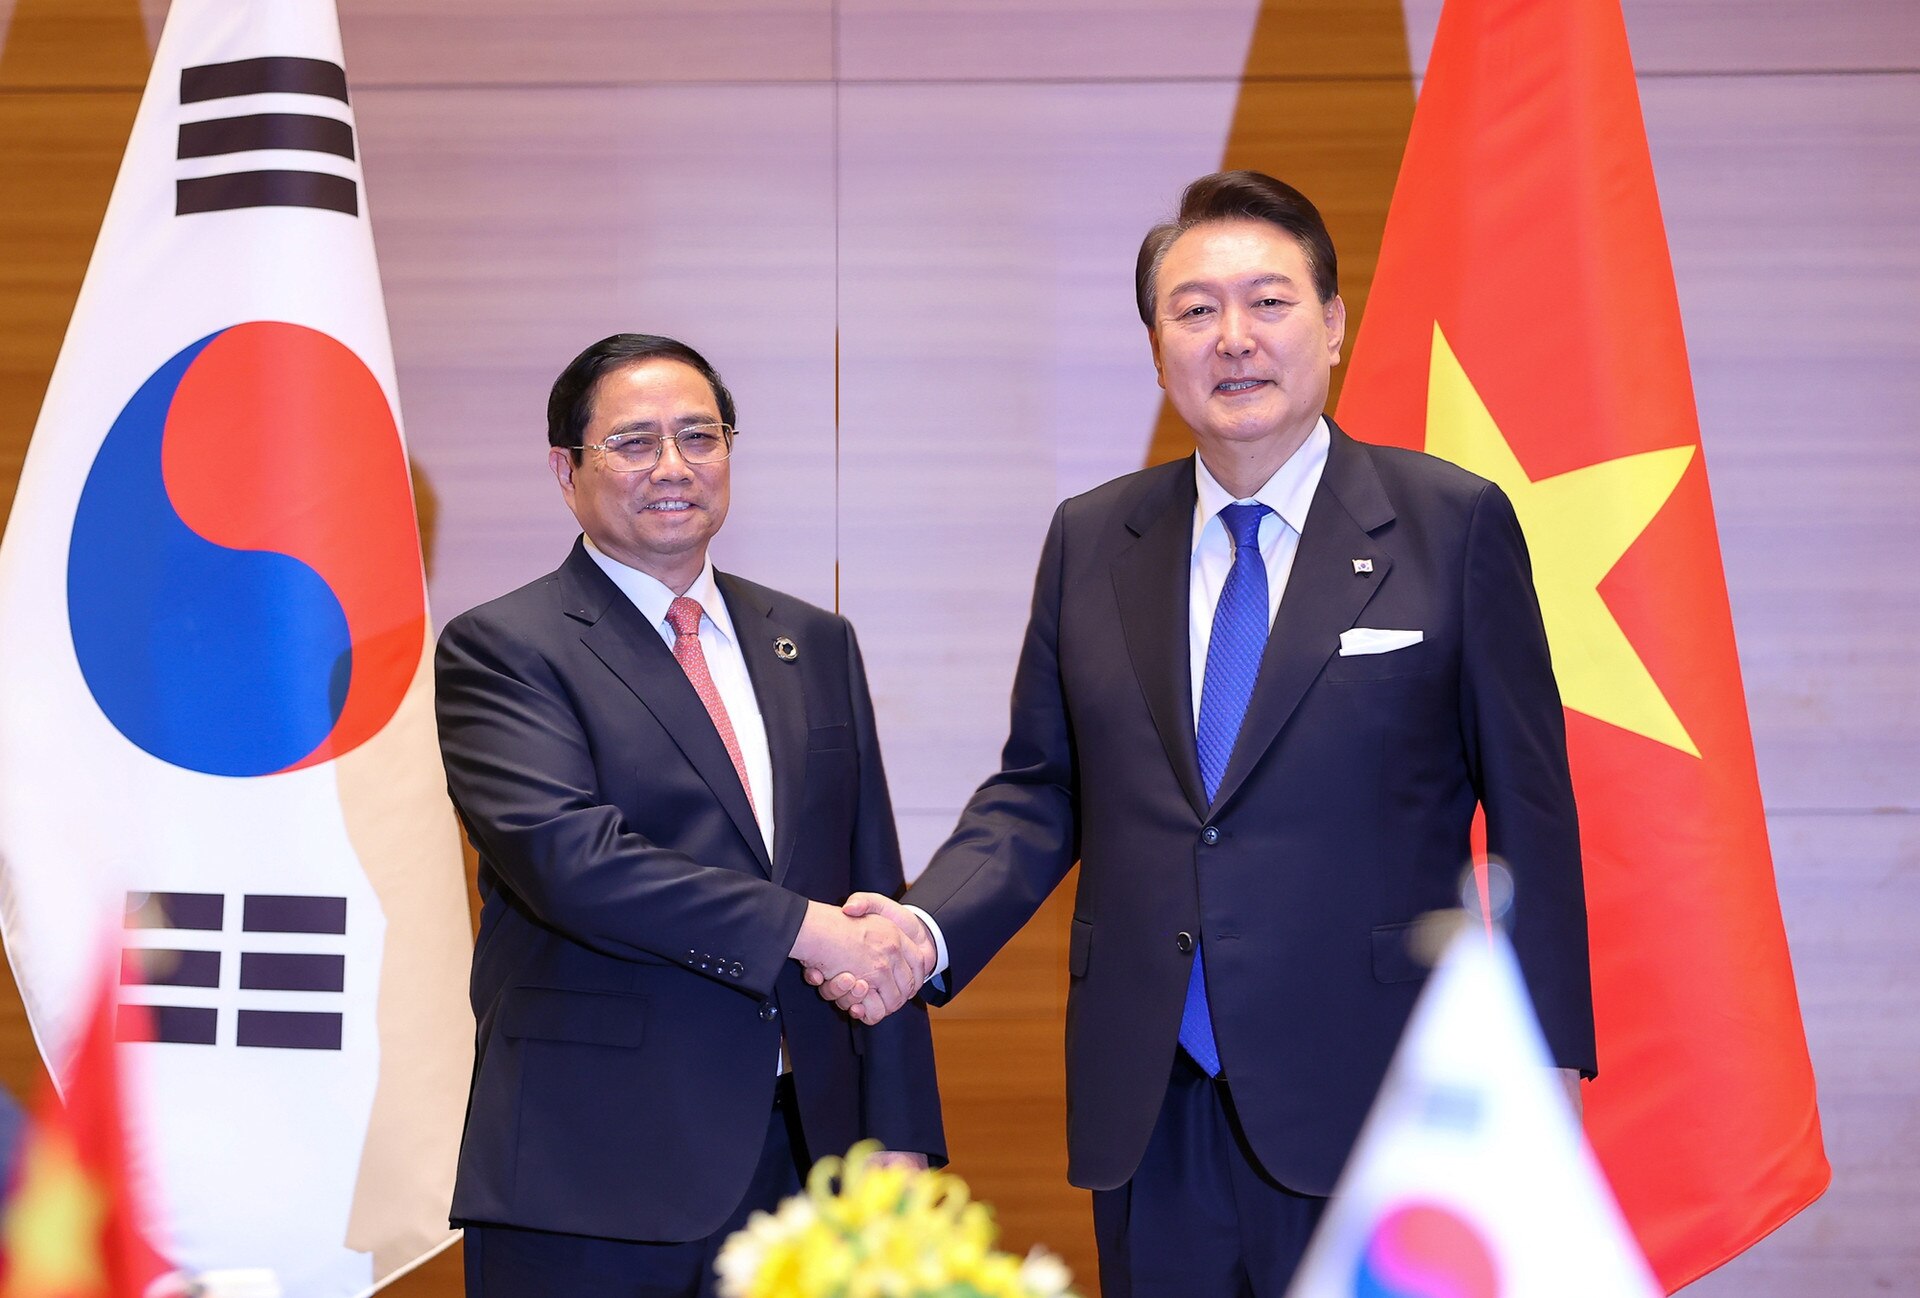 El Primer Ministro Pham Minh Chinh se reúne con el Presidente de la República de Corea con motivo de la Cumbre ampliada del G7 - Foto 1.